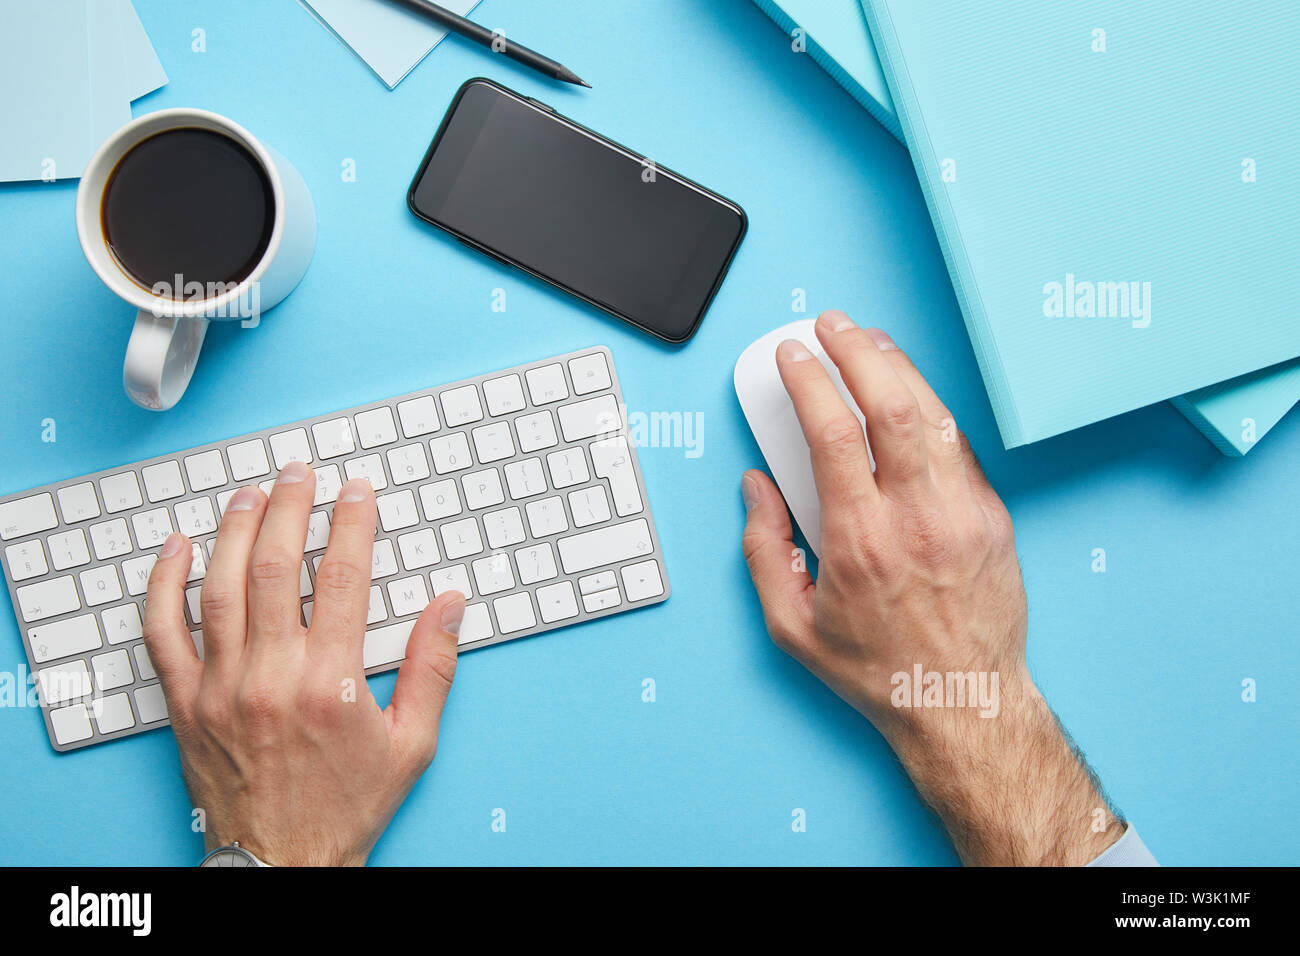 Portrait de l'homme à l'aide du clavier et souris de l'ordinateur sur le lieu de travail avec papiers, smartphone et tasse de café sur fond bleu Banque D'Images